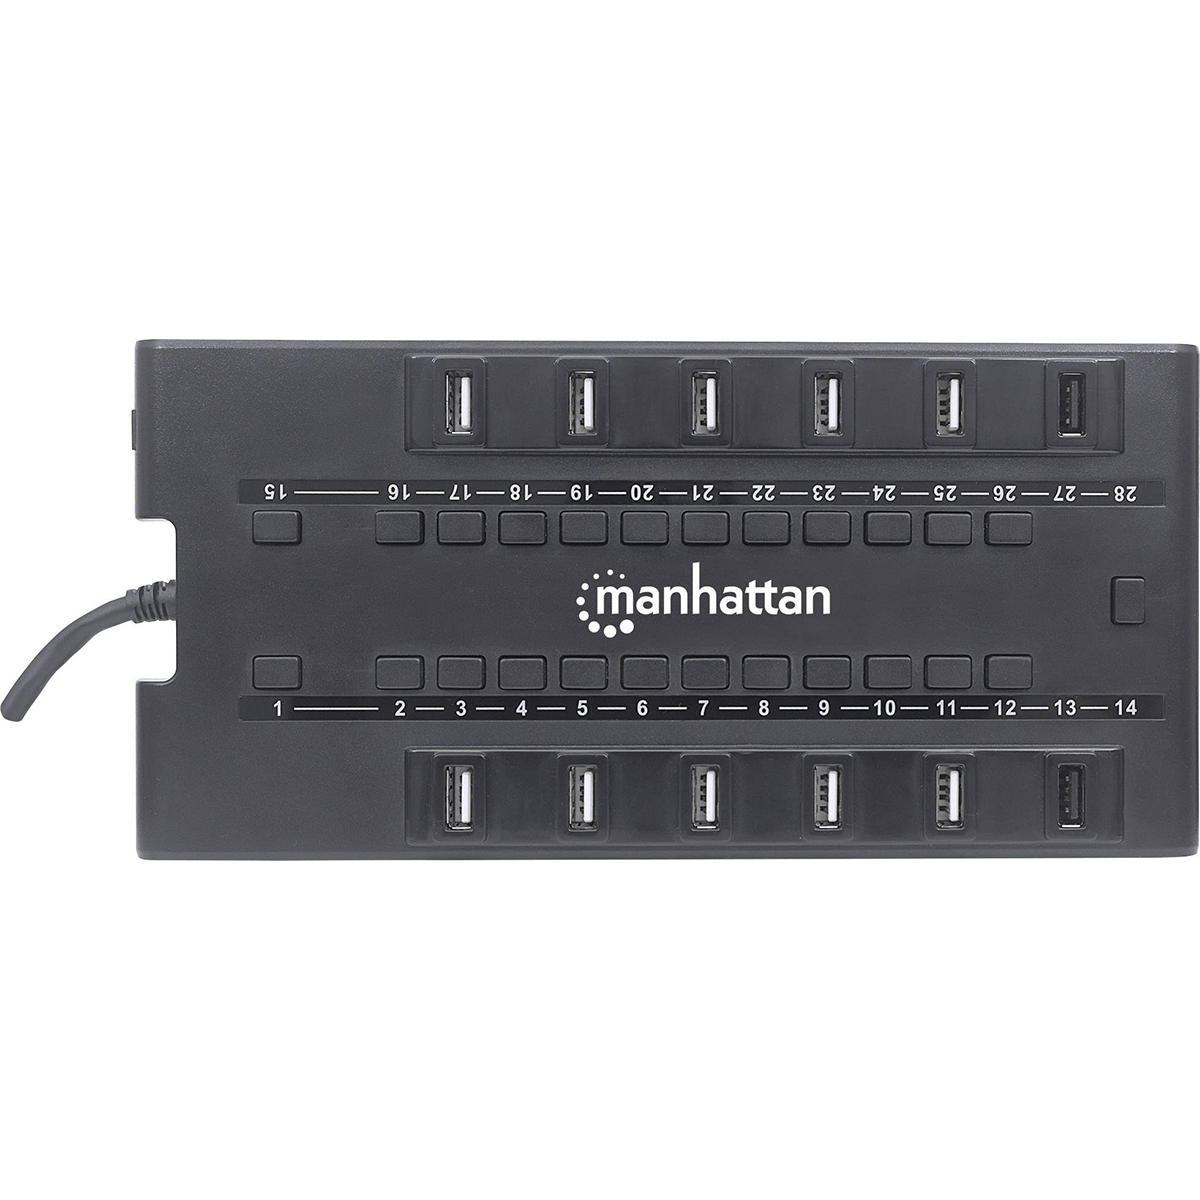 Manhattan - Gellyball USB Charger 28 slot